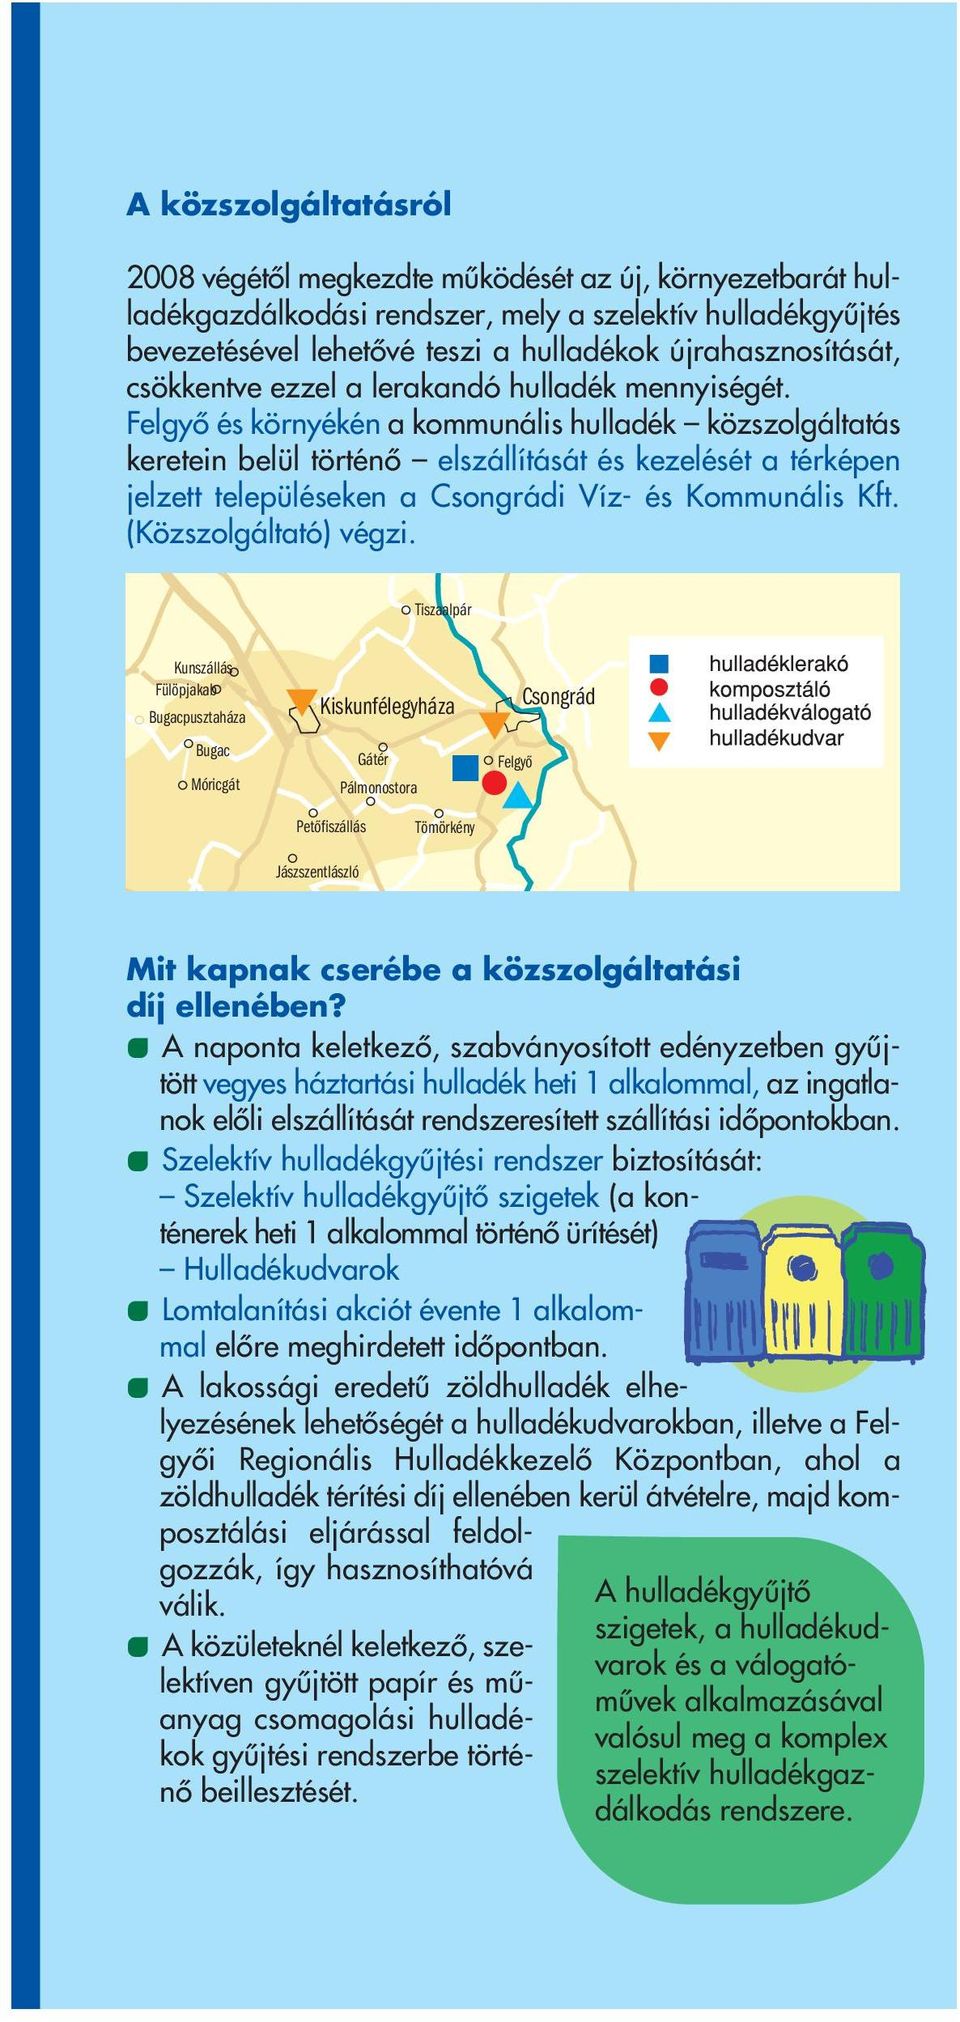 Felgyô és környékén a kommunális hulladék közszolgáltatás keretein belül történô elszállítását és kezelését a térképen jelzett településeken a Csongrádi Víz- és Kommunális Kft. (Közszolgáltató) végzi.